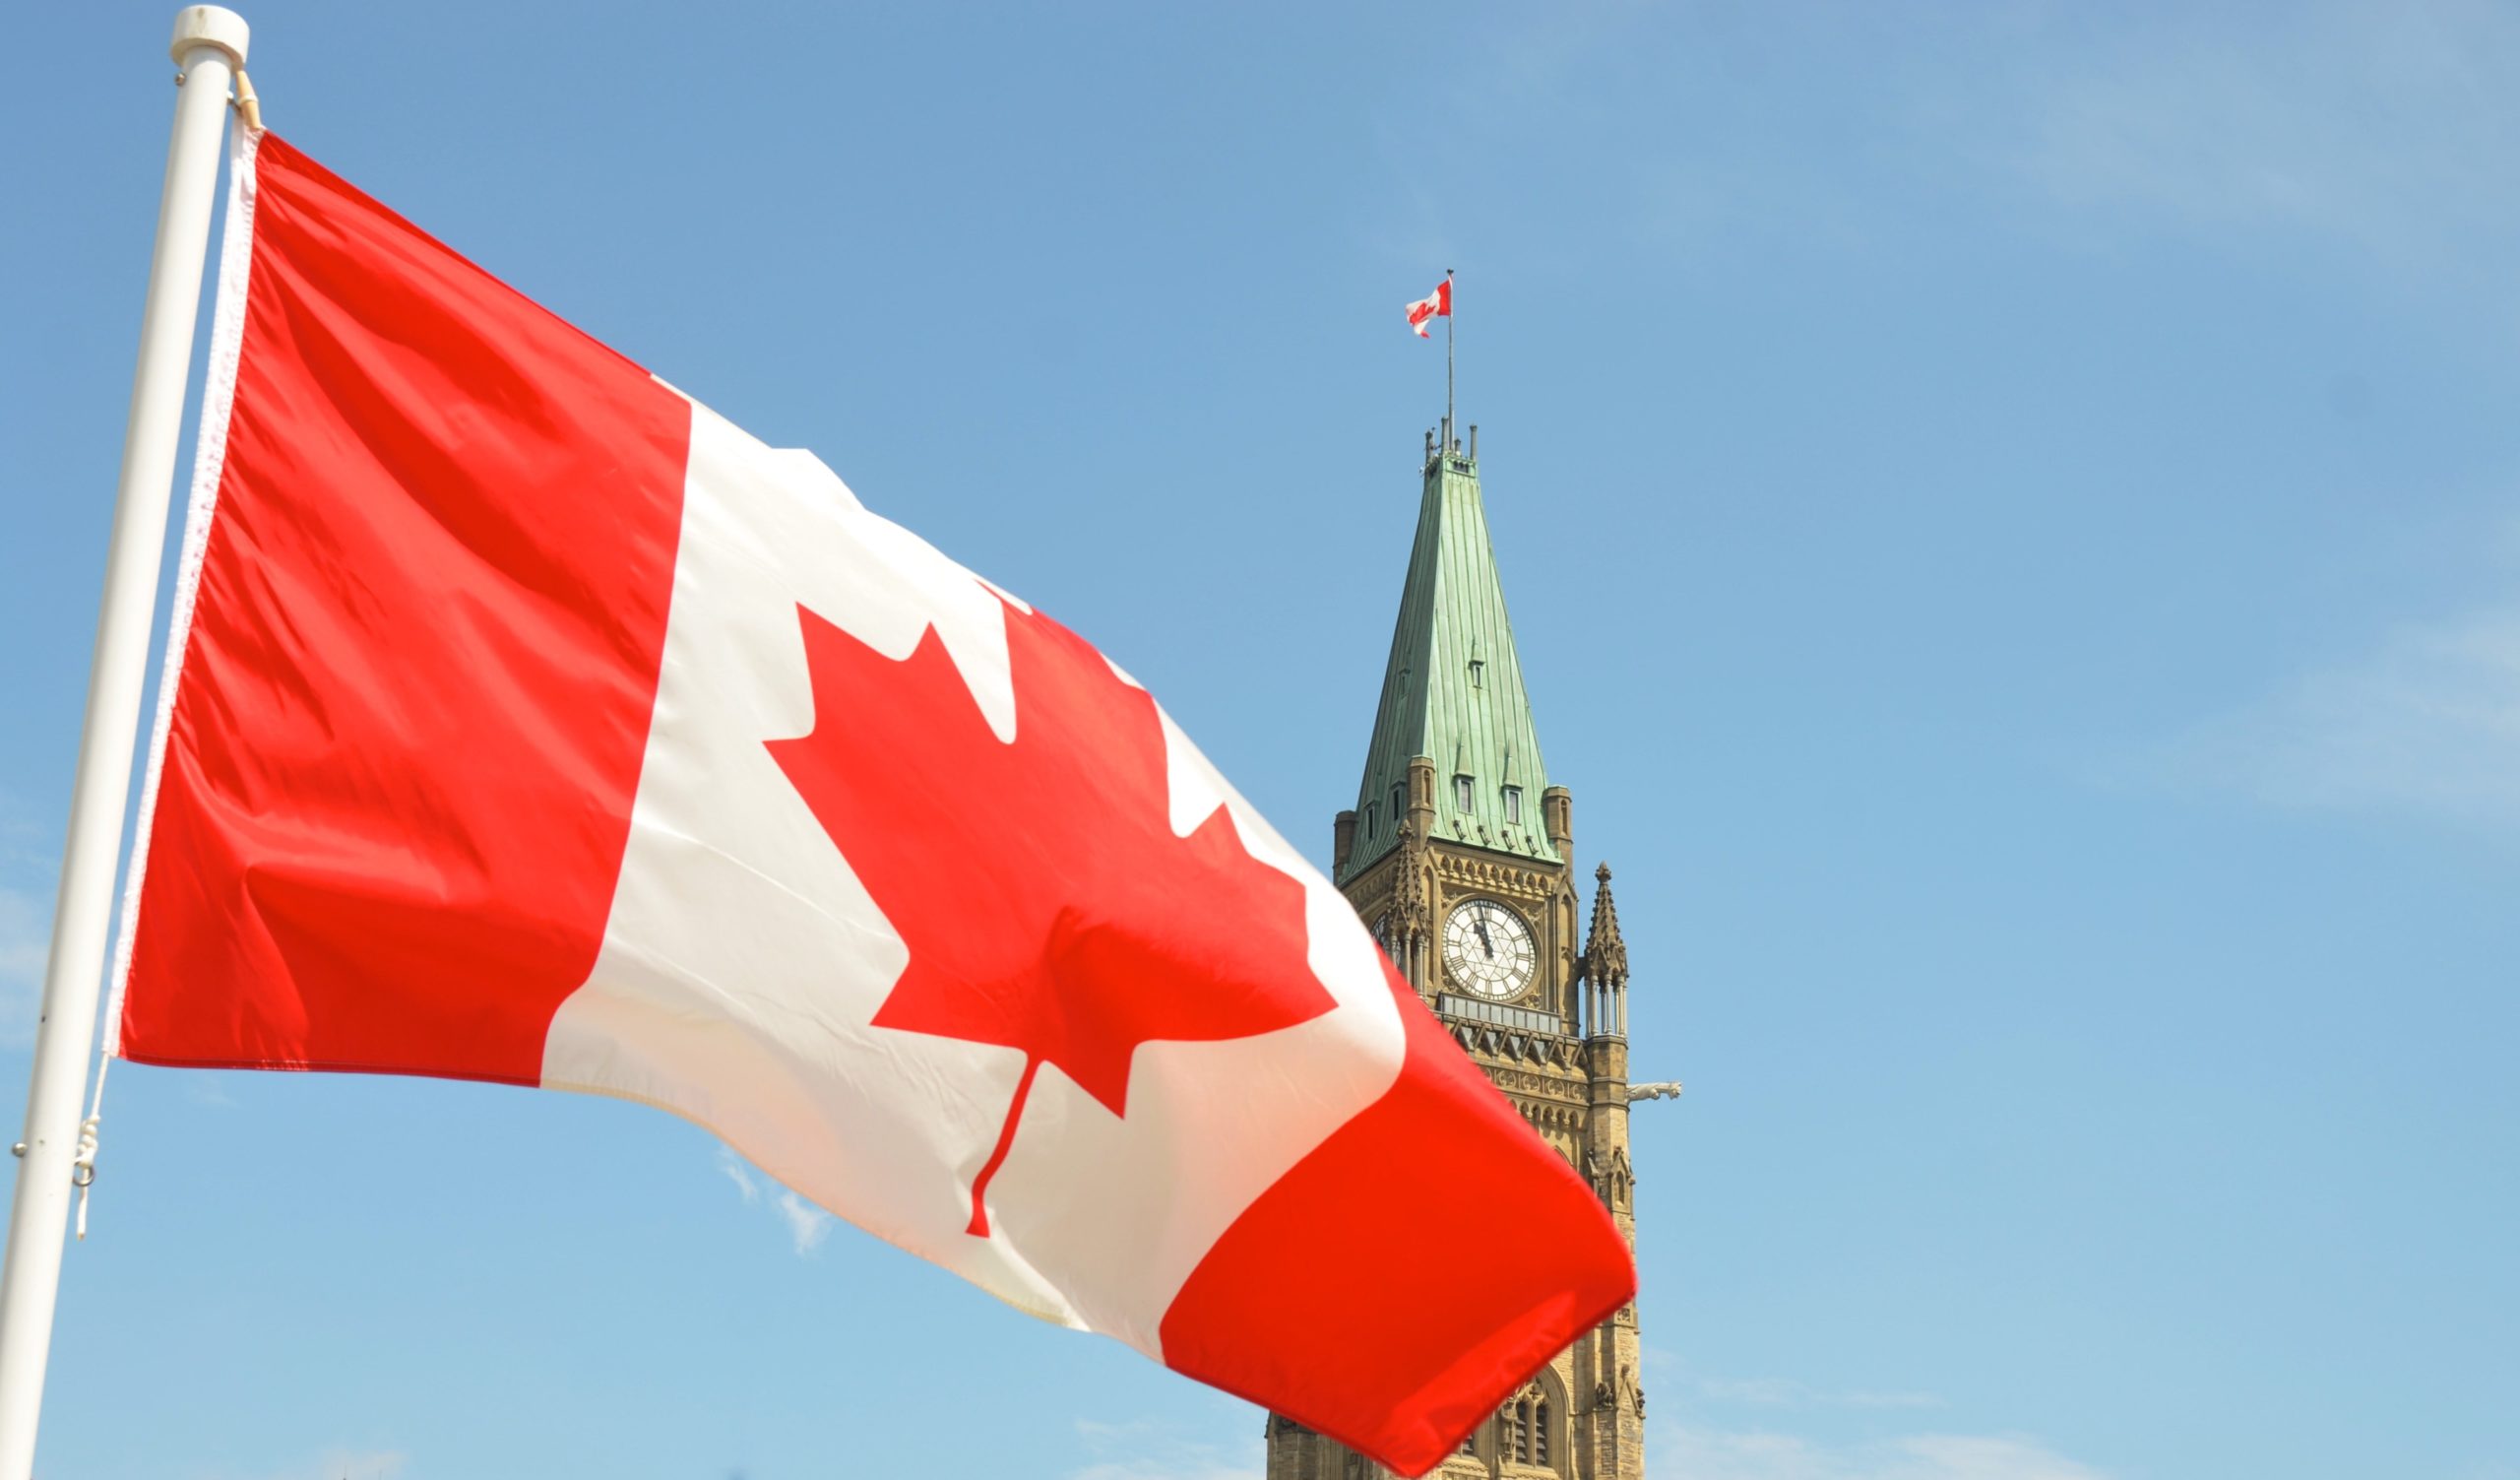 Voyager au Canada - Ottawa et le drapeau canadien